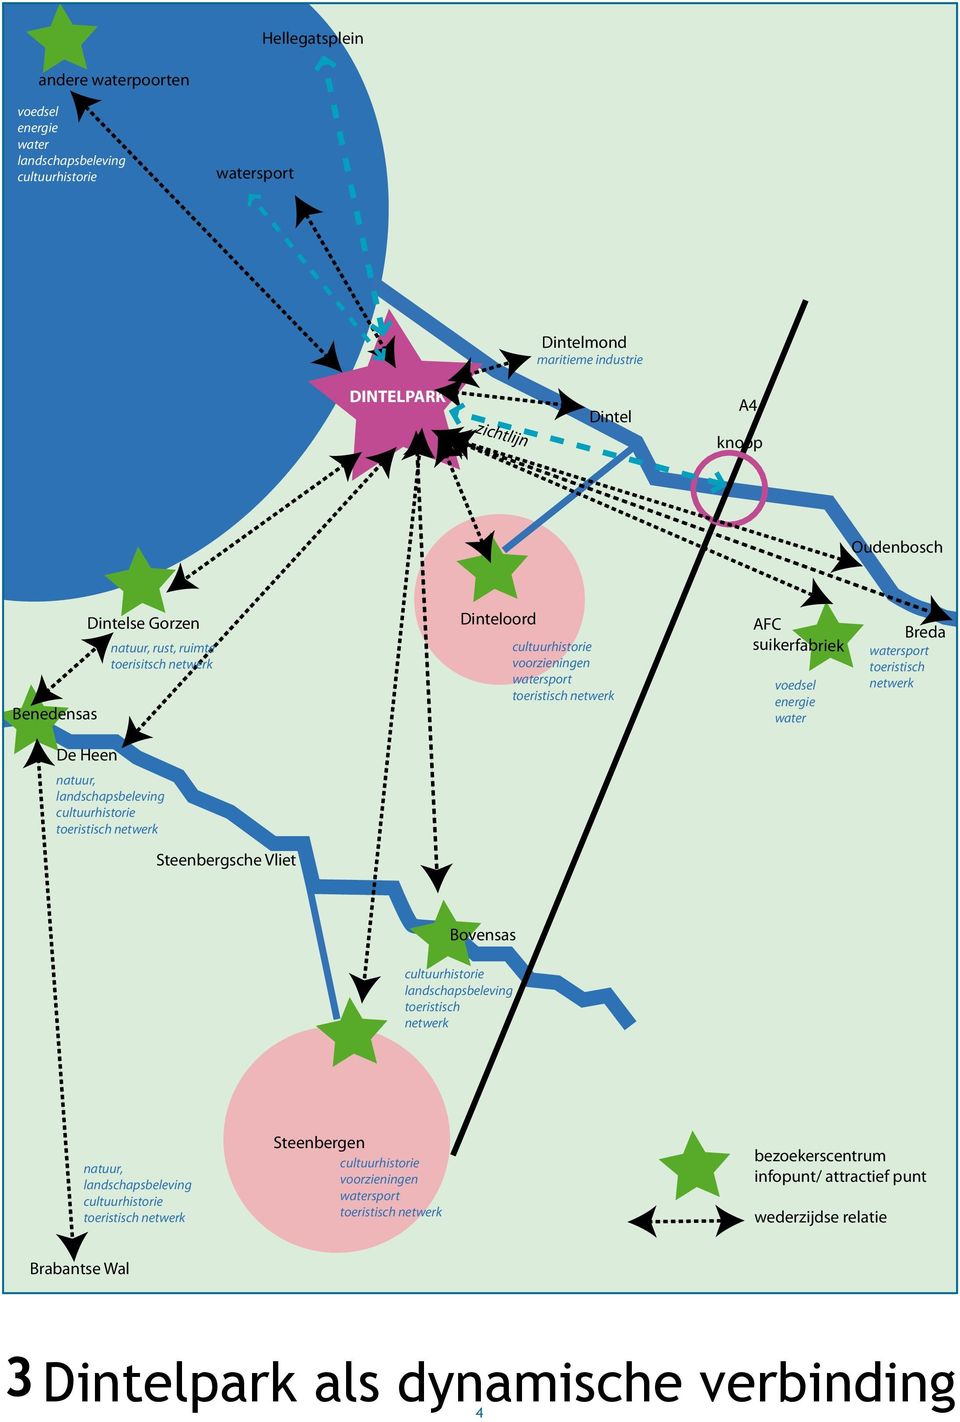 water Breda toeristisch netwerk De Heen, Steenbergsche Vliet Bovensas toeristisch netwerk, Steenbergen voorzieningen